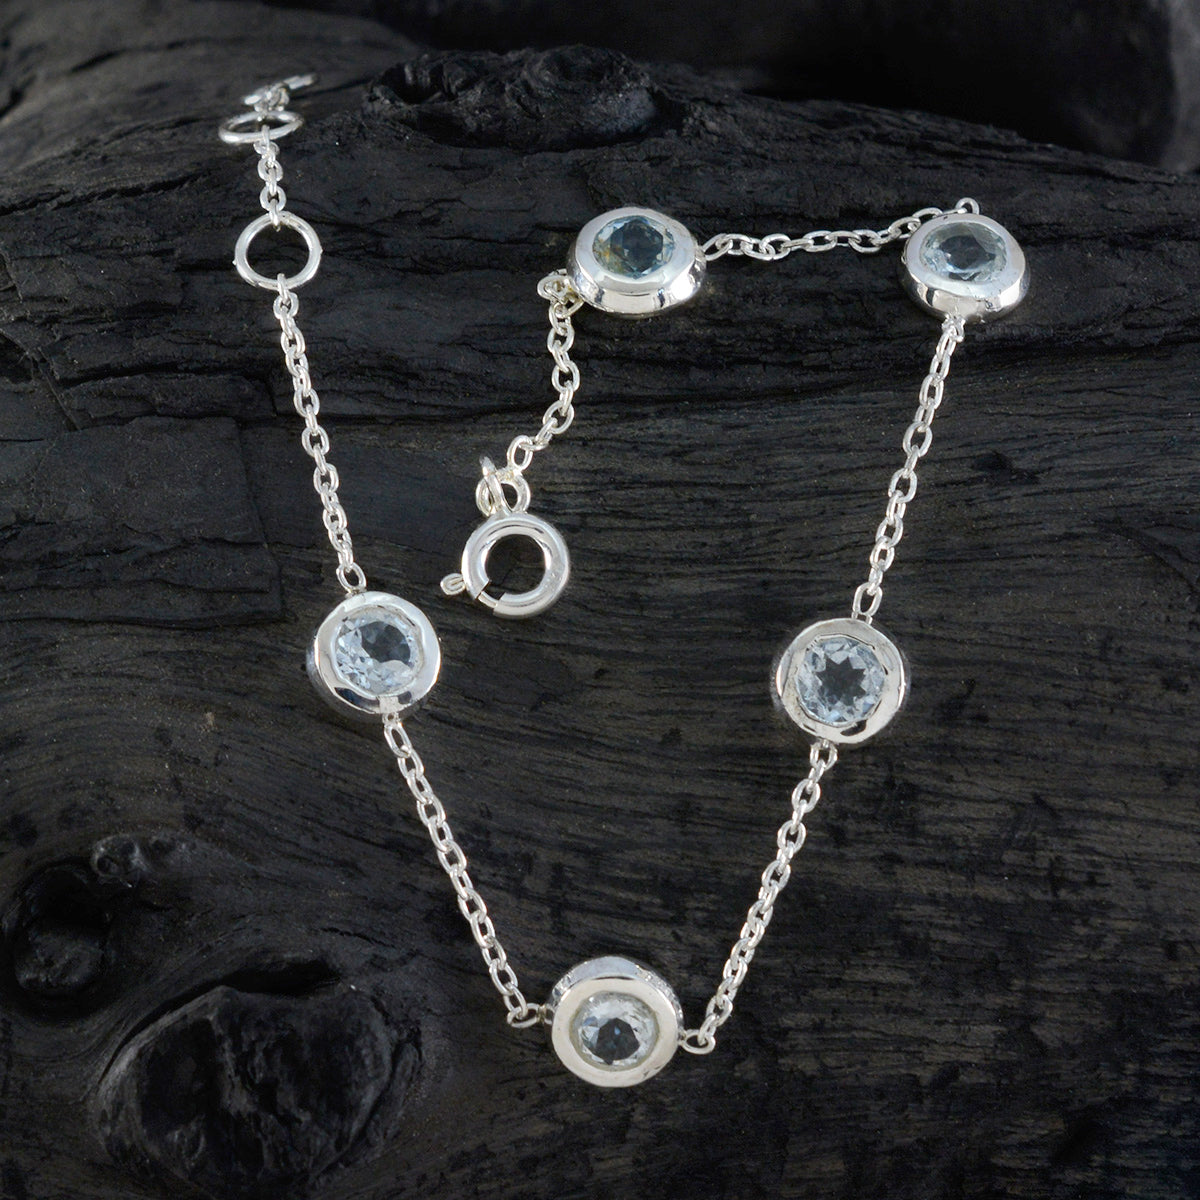 RIYO привлекательный браслет из стерлингового серебра 925 пробы для женщин, браслет с синим топазом, браслет с зубцами, браслет с пружинным замком, браслет l, размер 6-8,5 дюйма.